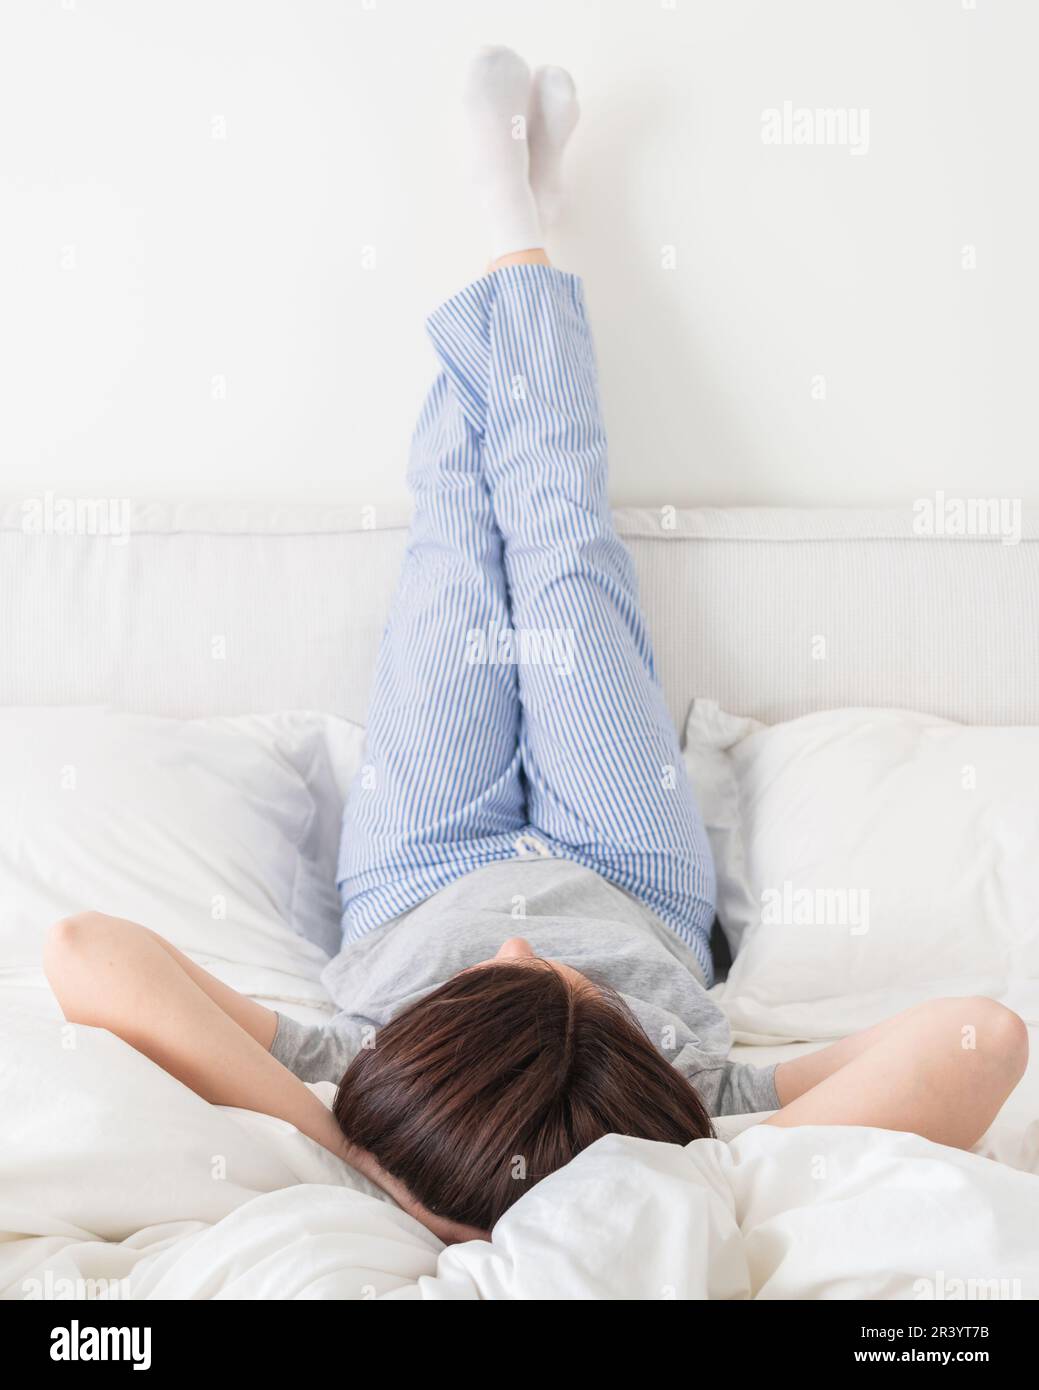 Die Beine der Frau waren hoch und die Arme unter ihrem Kopf lagen im Bett und trugen einen Pyjama Stockfoto